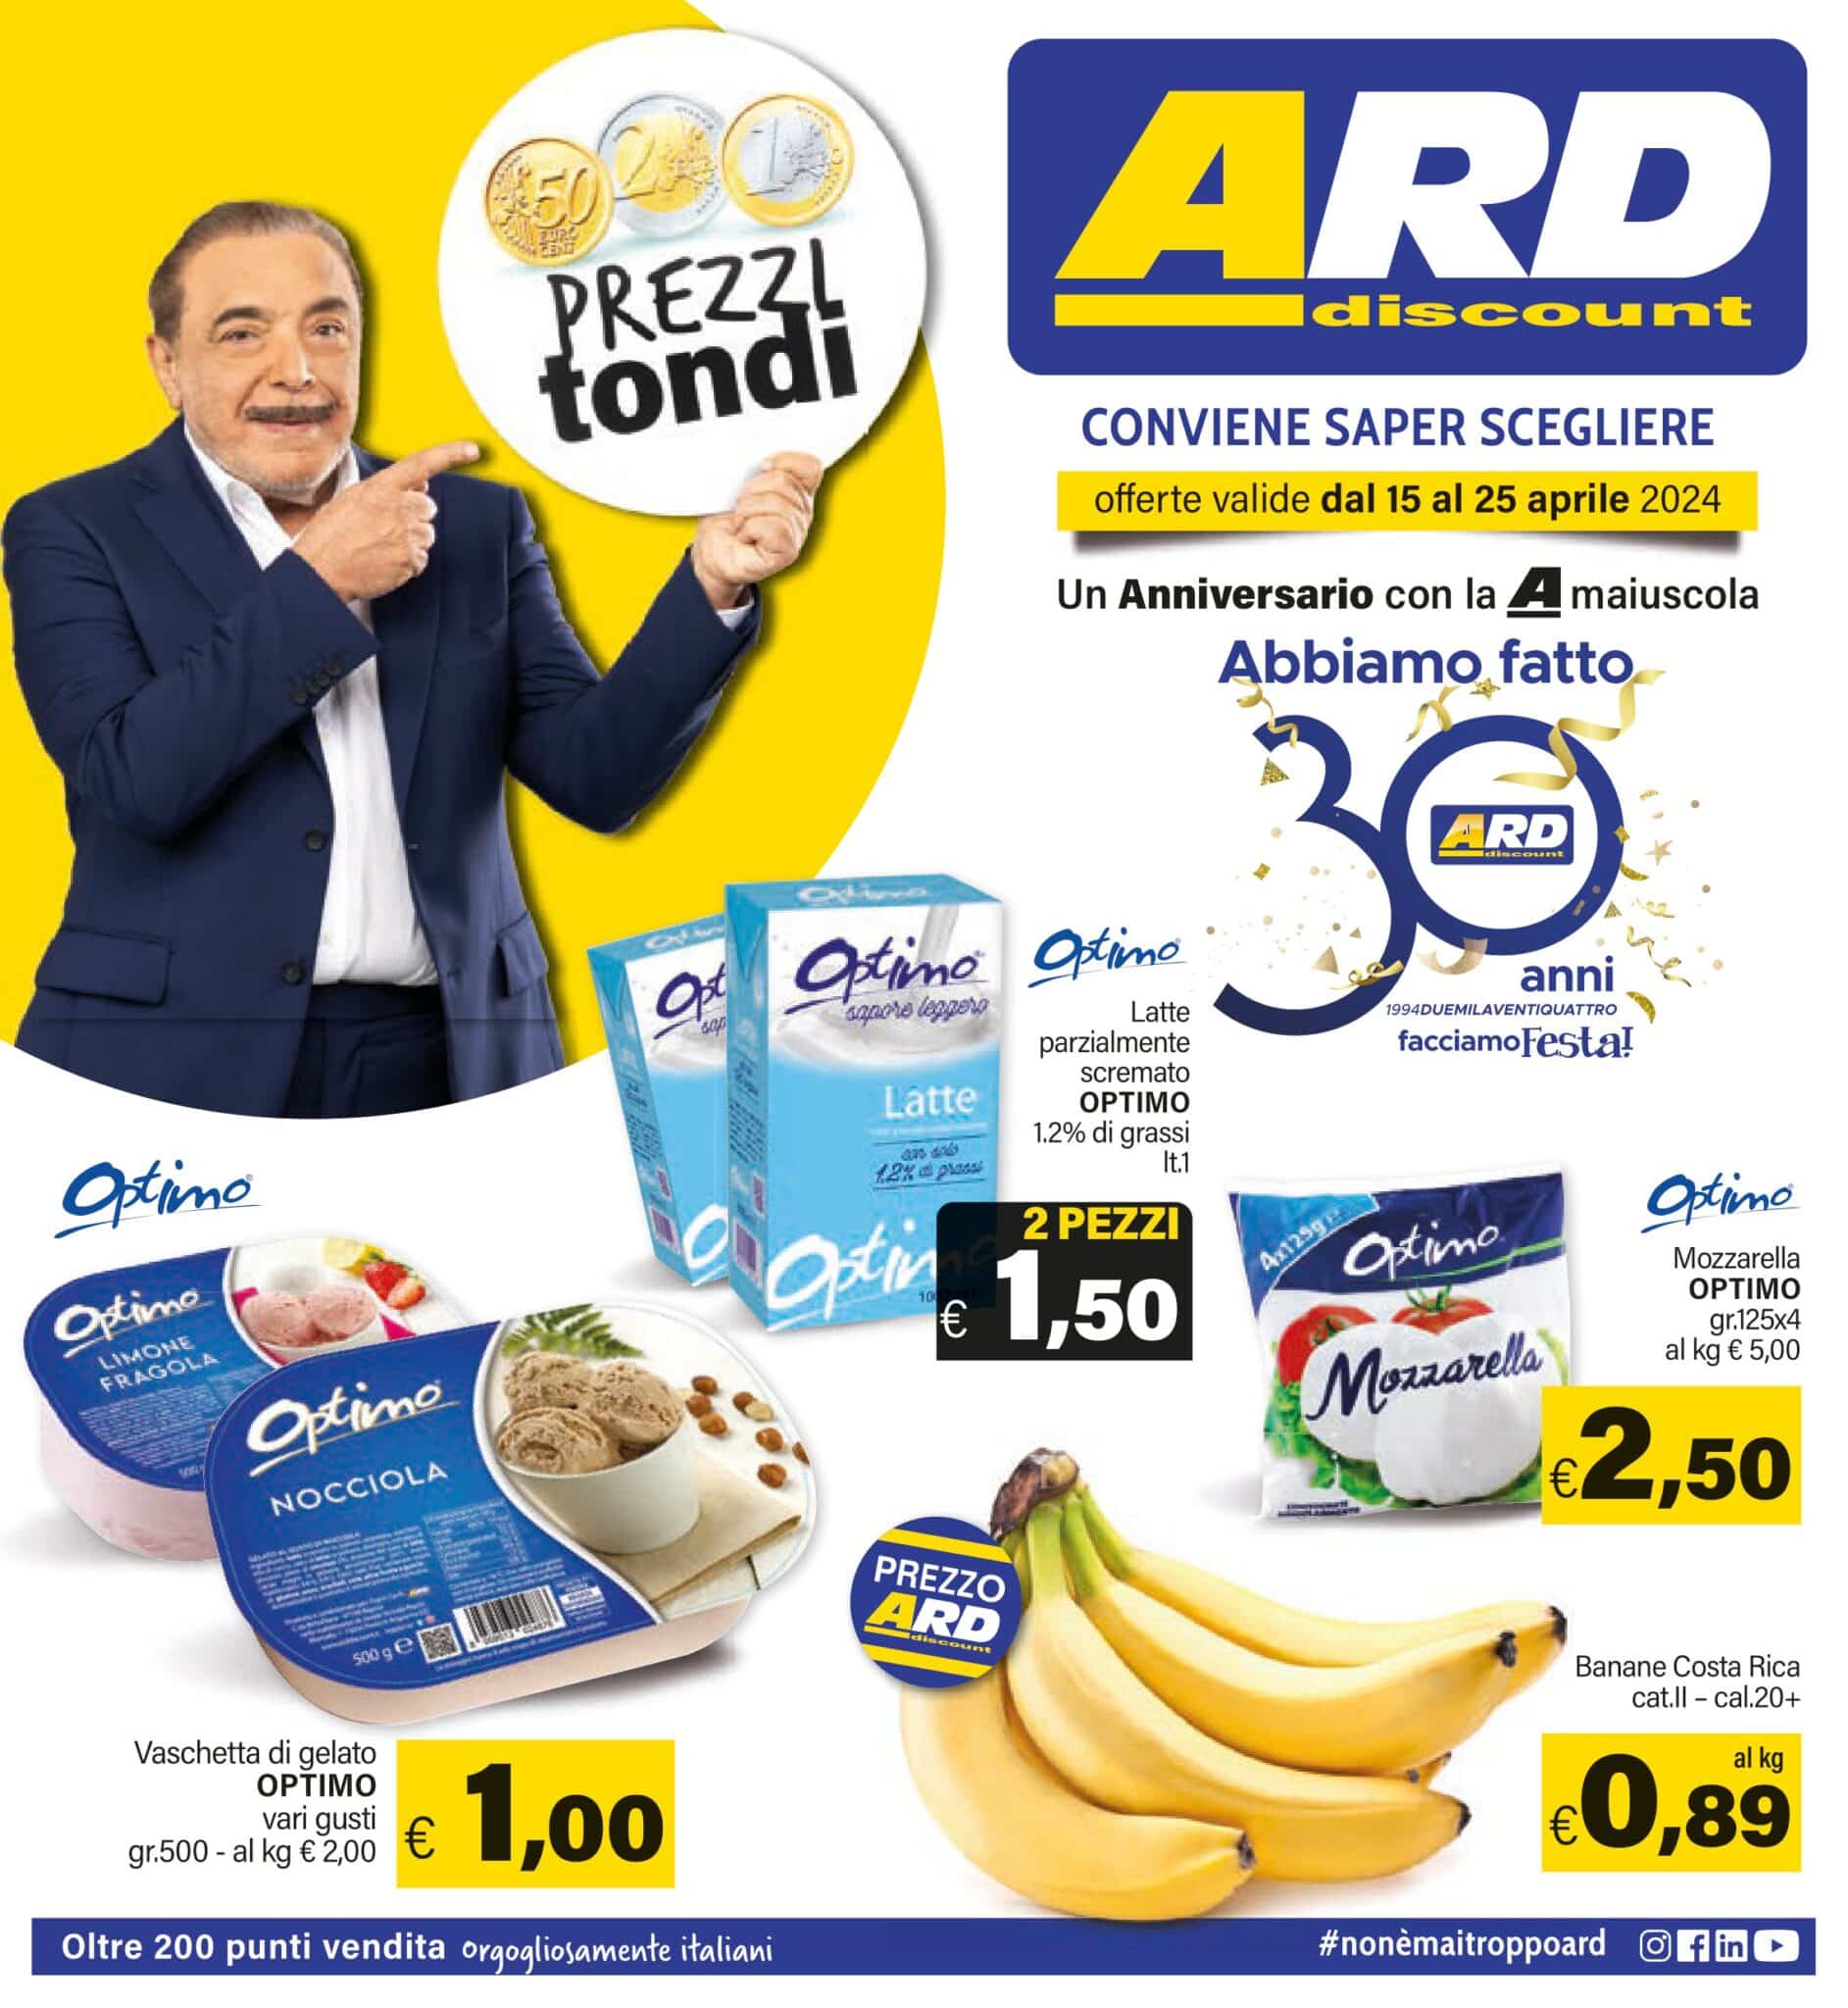 ARD Discount Offerte